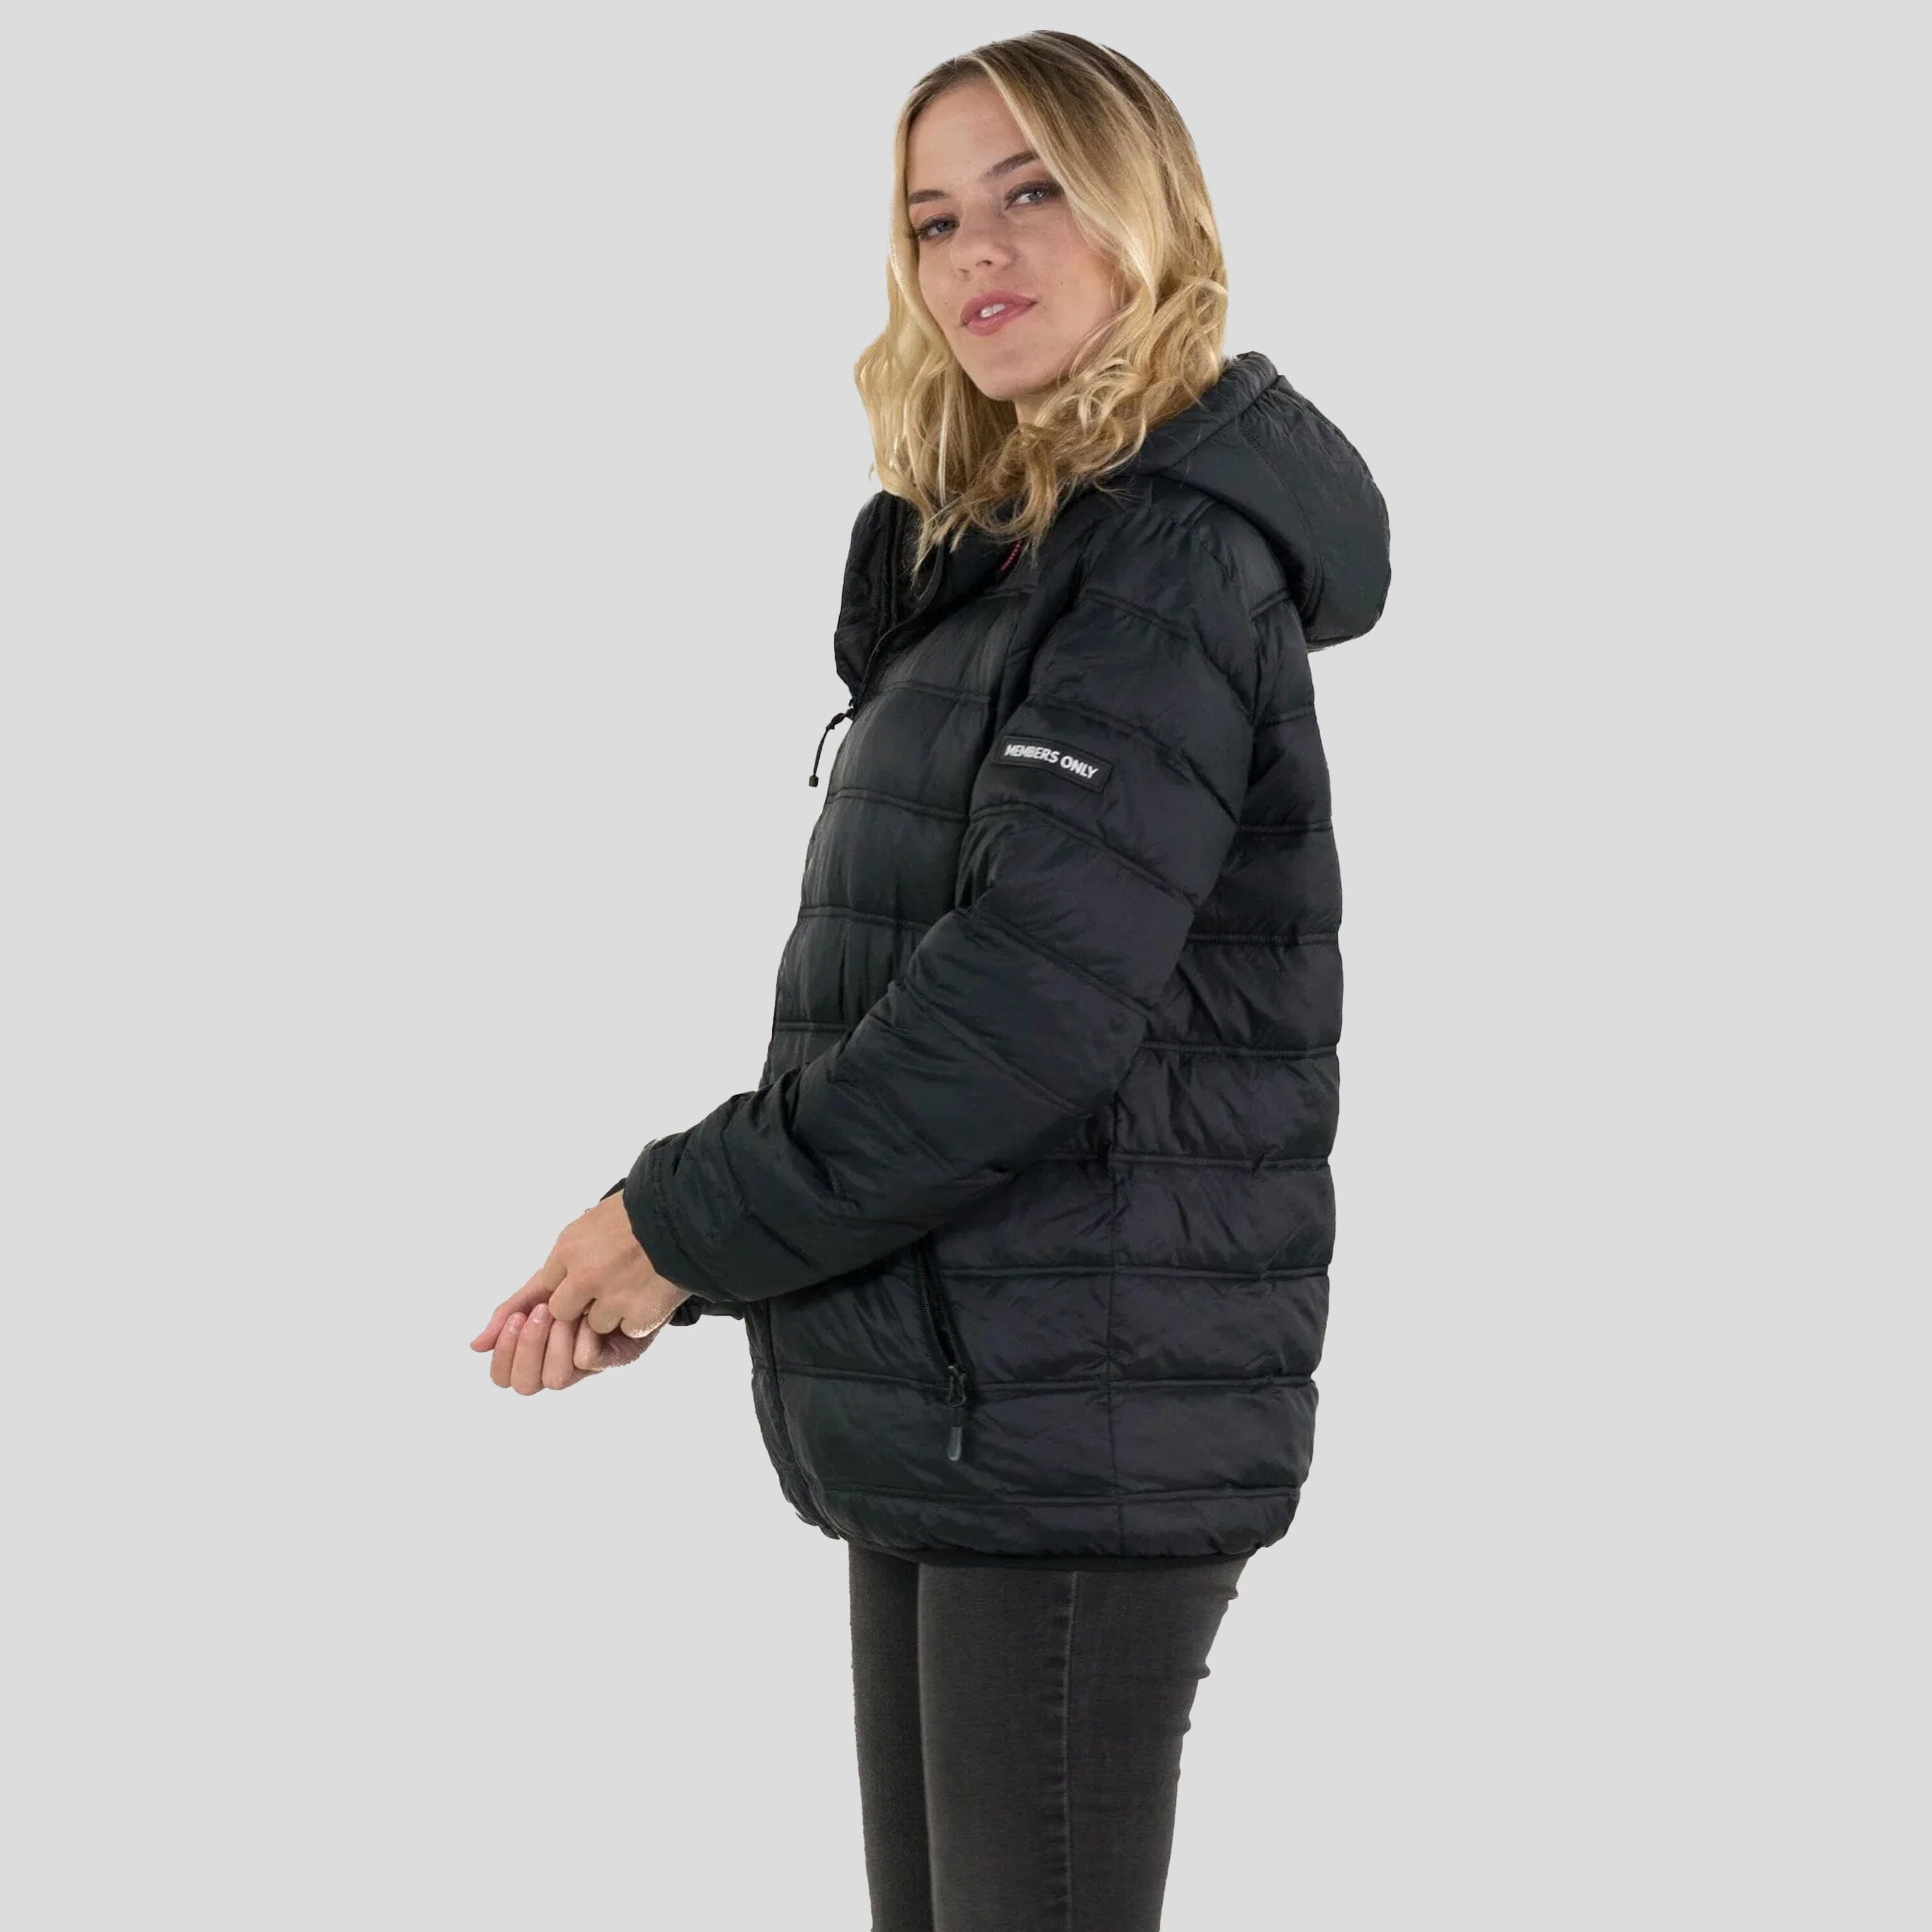 Women's Zip Front Puffer Oversized Jacket - FINAL SALE Womens Jacket Members Only 